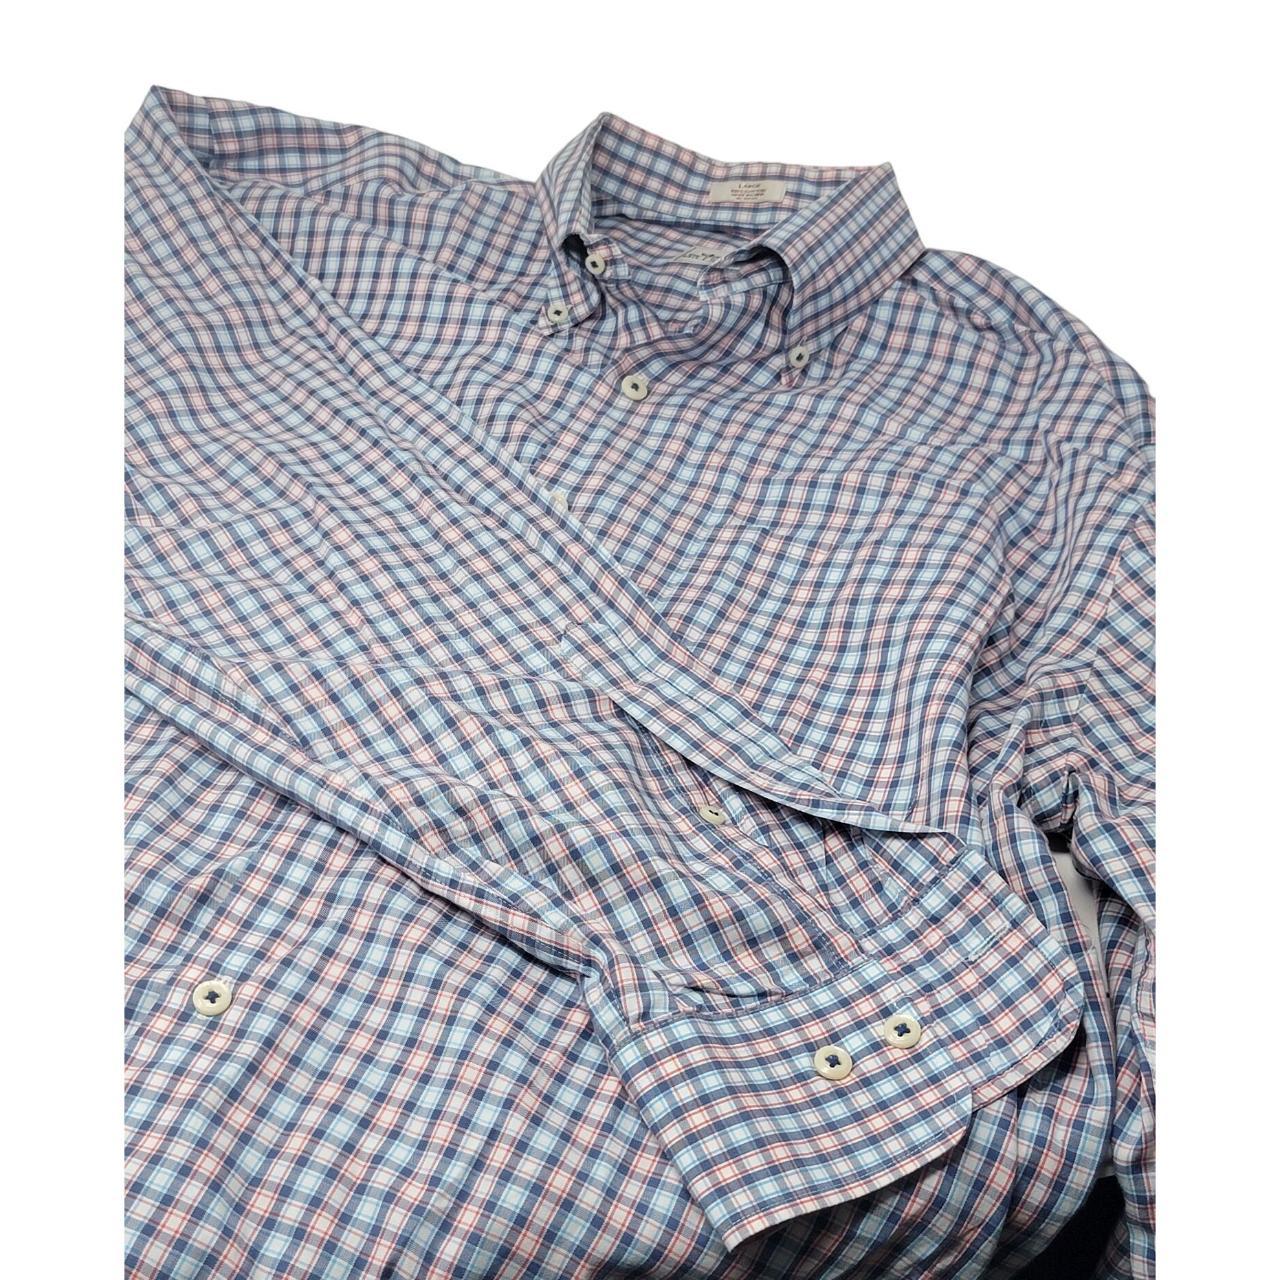 This Peter Millar Men's Large Golf Dress Shirt is a... - Depop